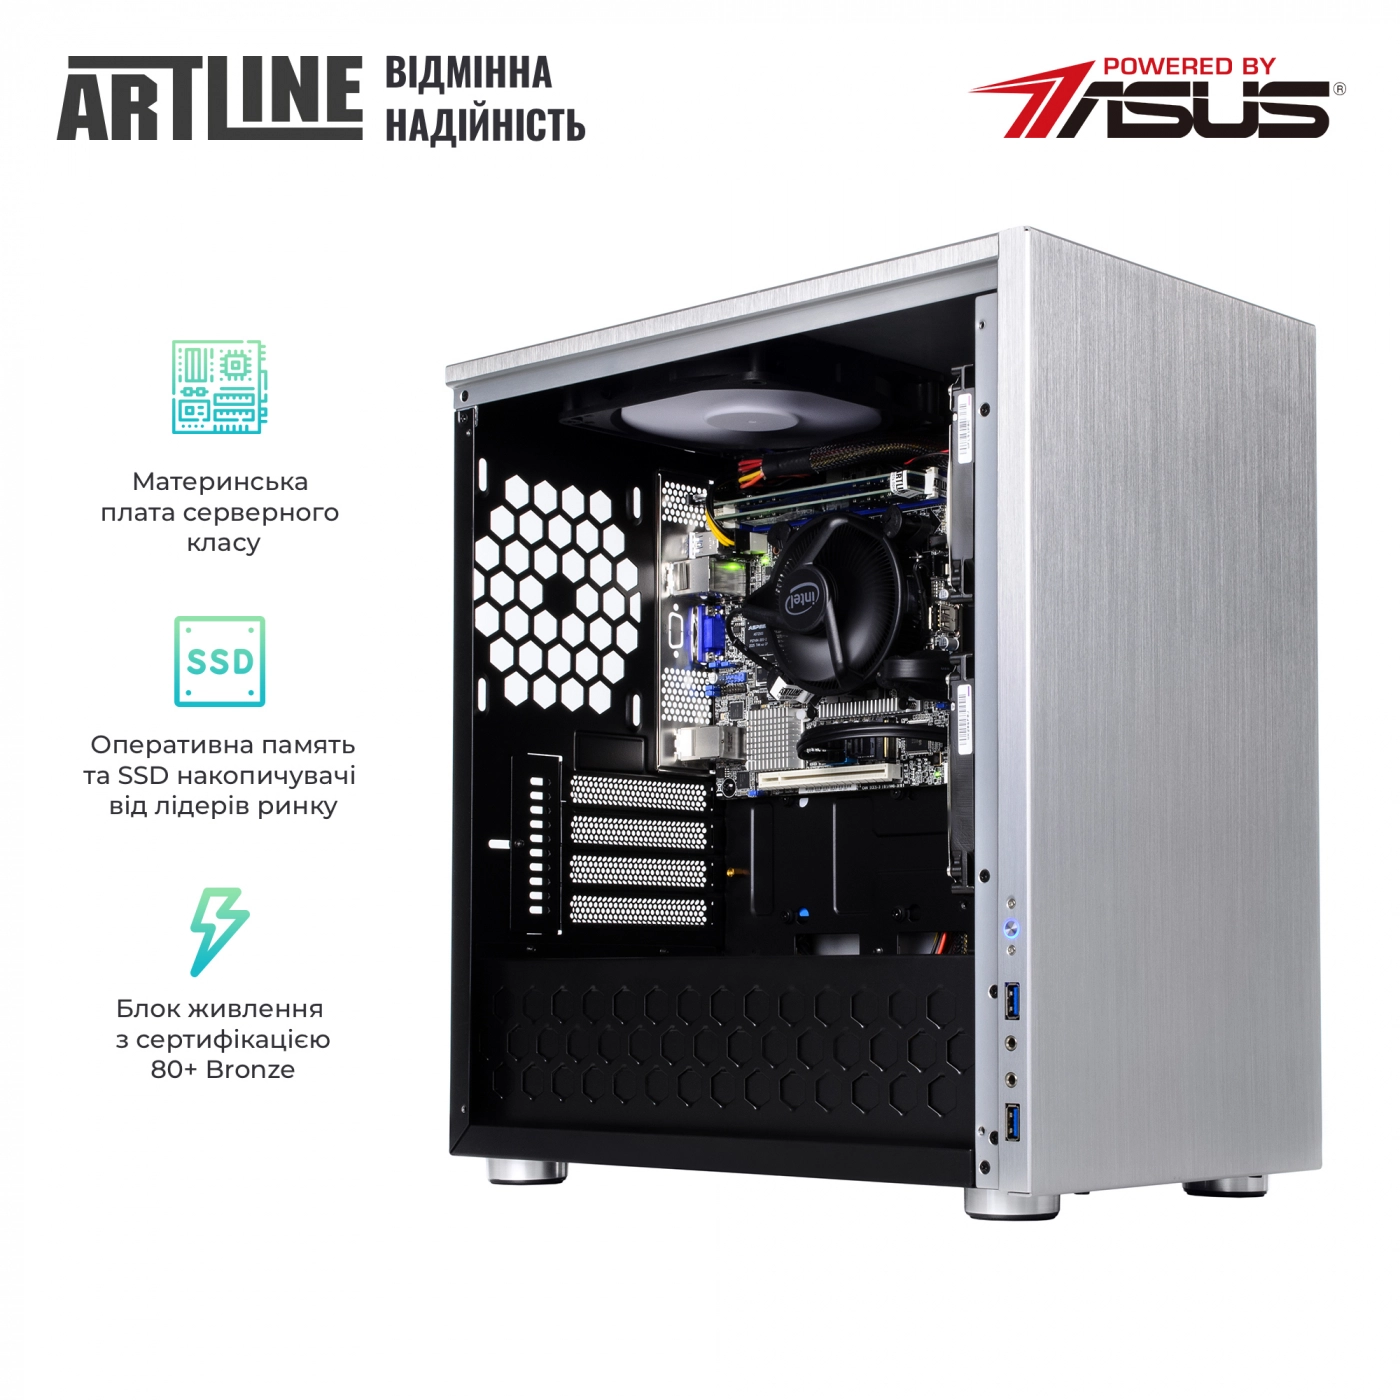 Купить Сервер ARTLINE Business T21v06 - фото 2